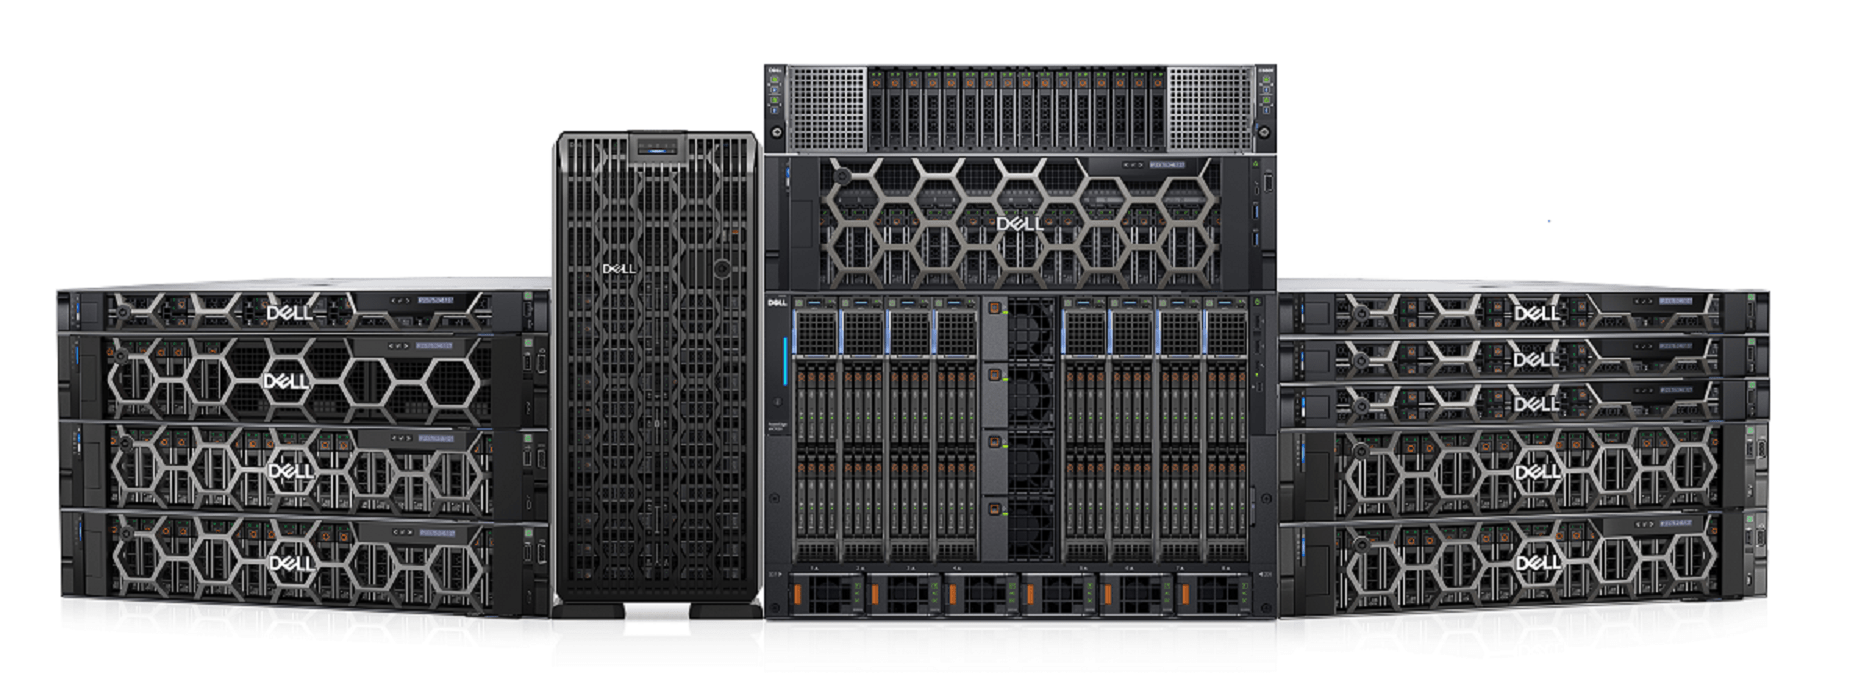 Los servidores Dell PowerEdge de última generación ofrecen rendimiento avanzado y un diseño con eficiencia energética